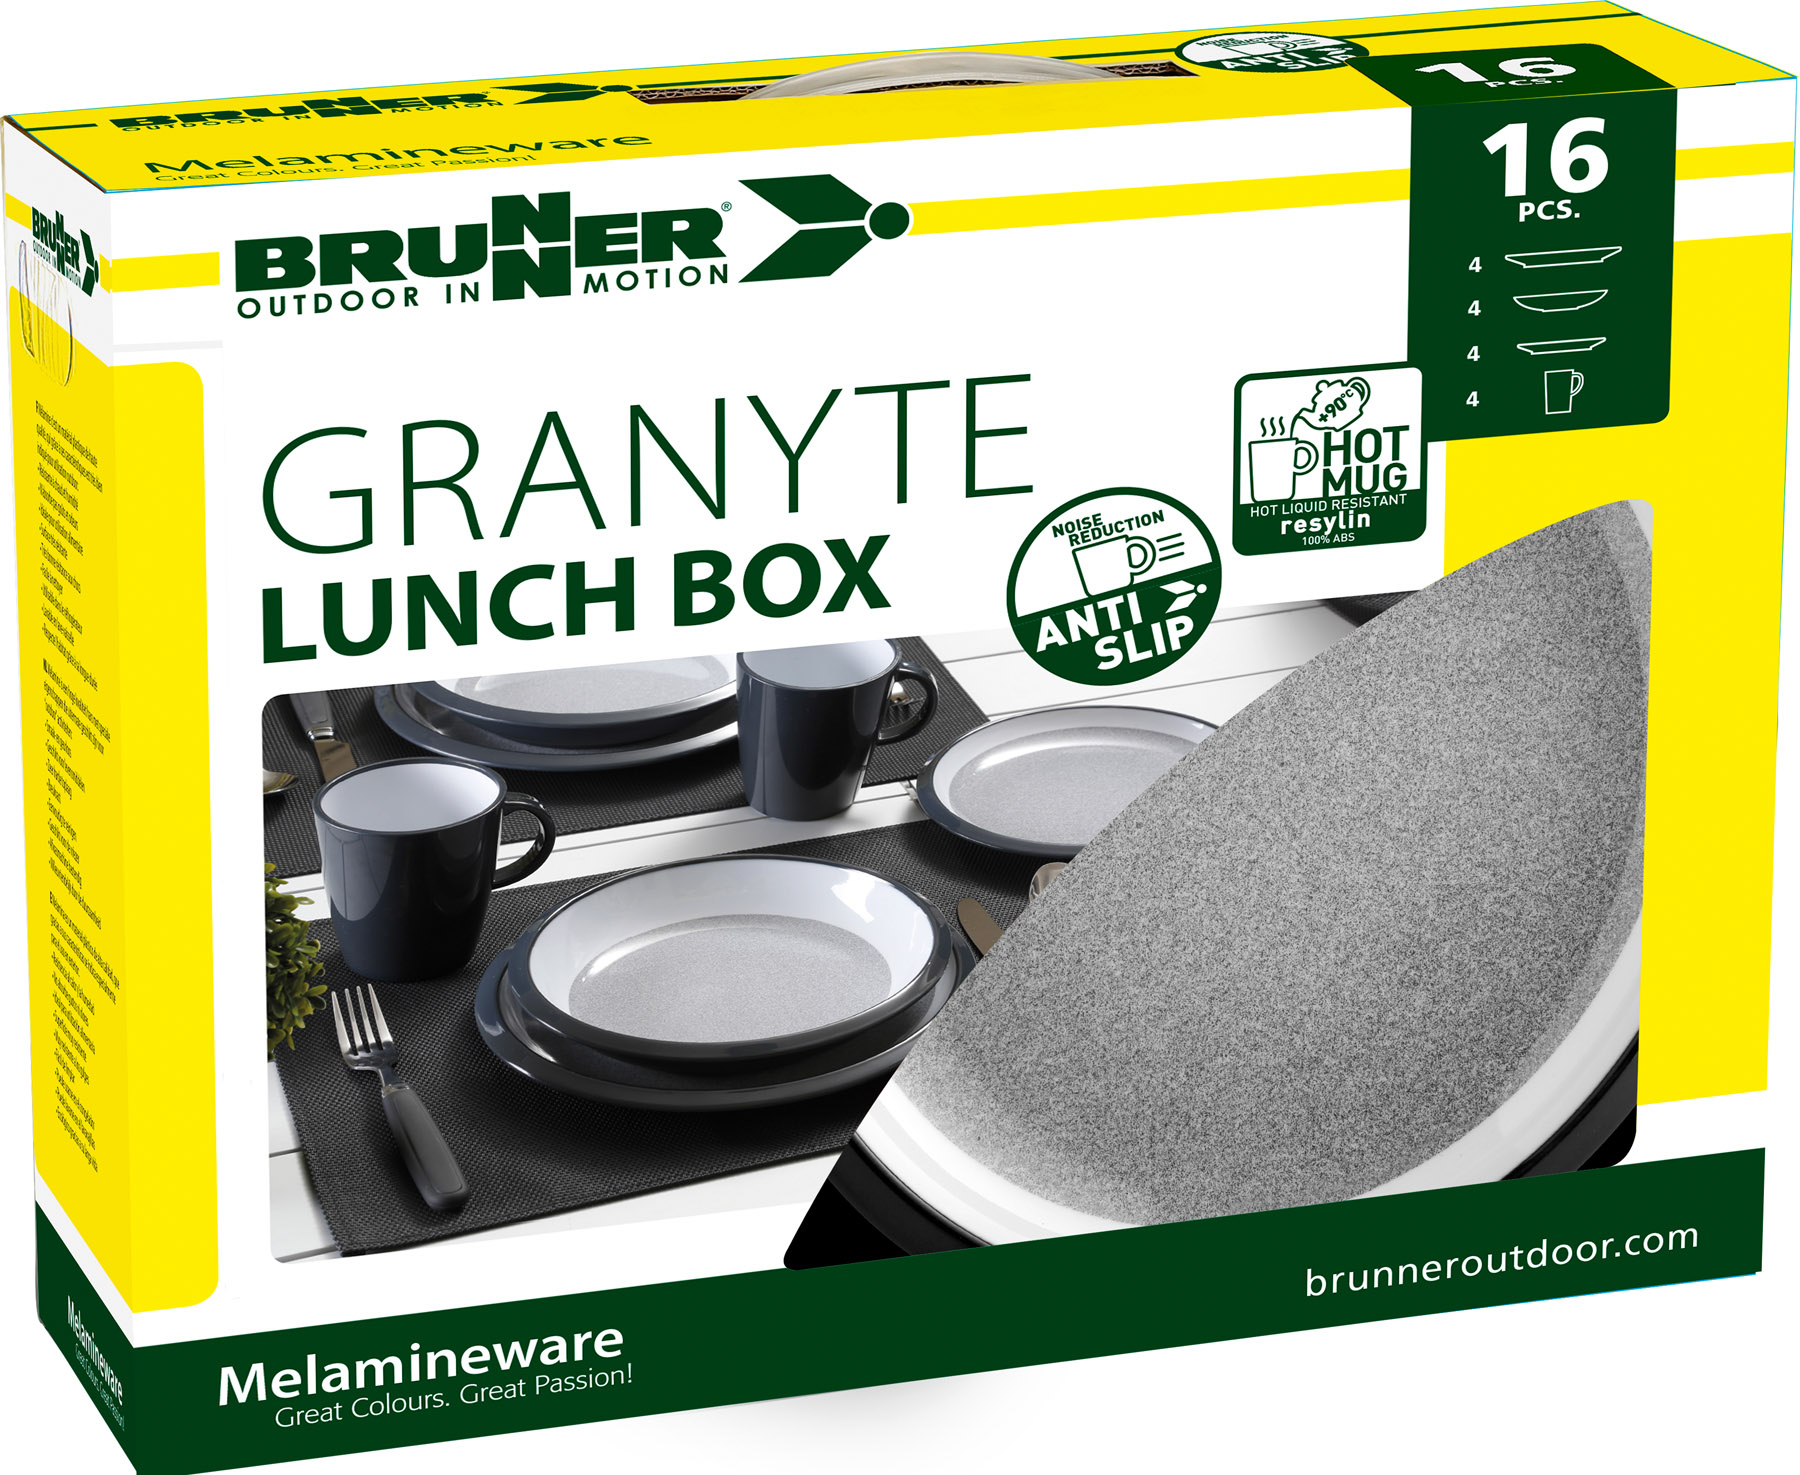 Brunner - Geschirrset "Granyte Lunch Box"  16-teilig